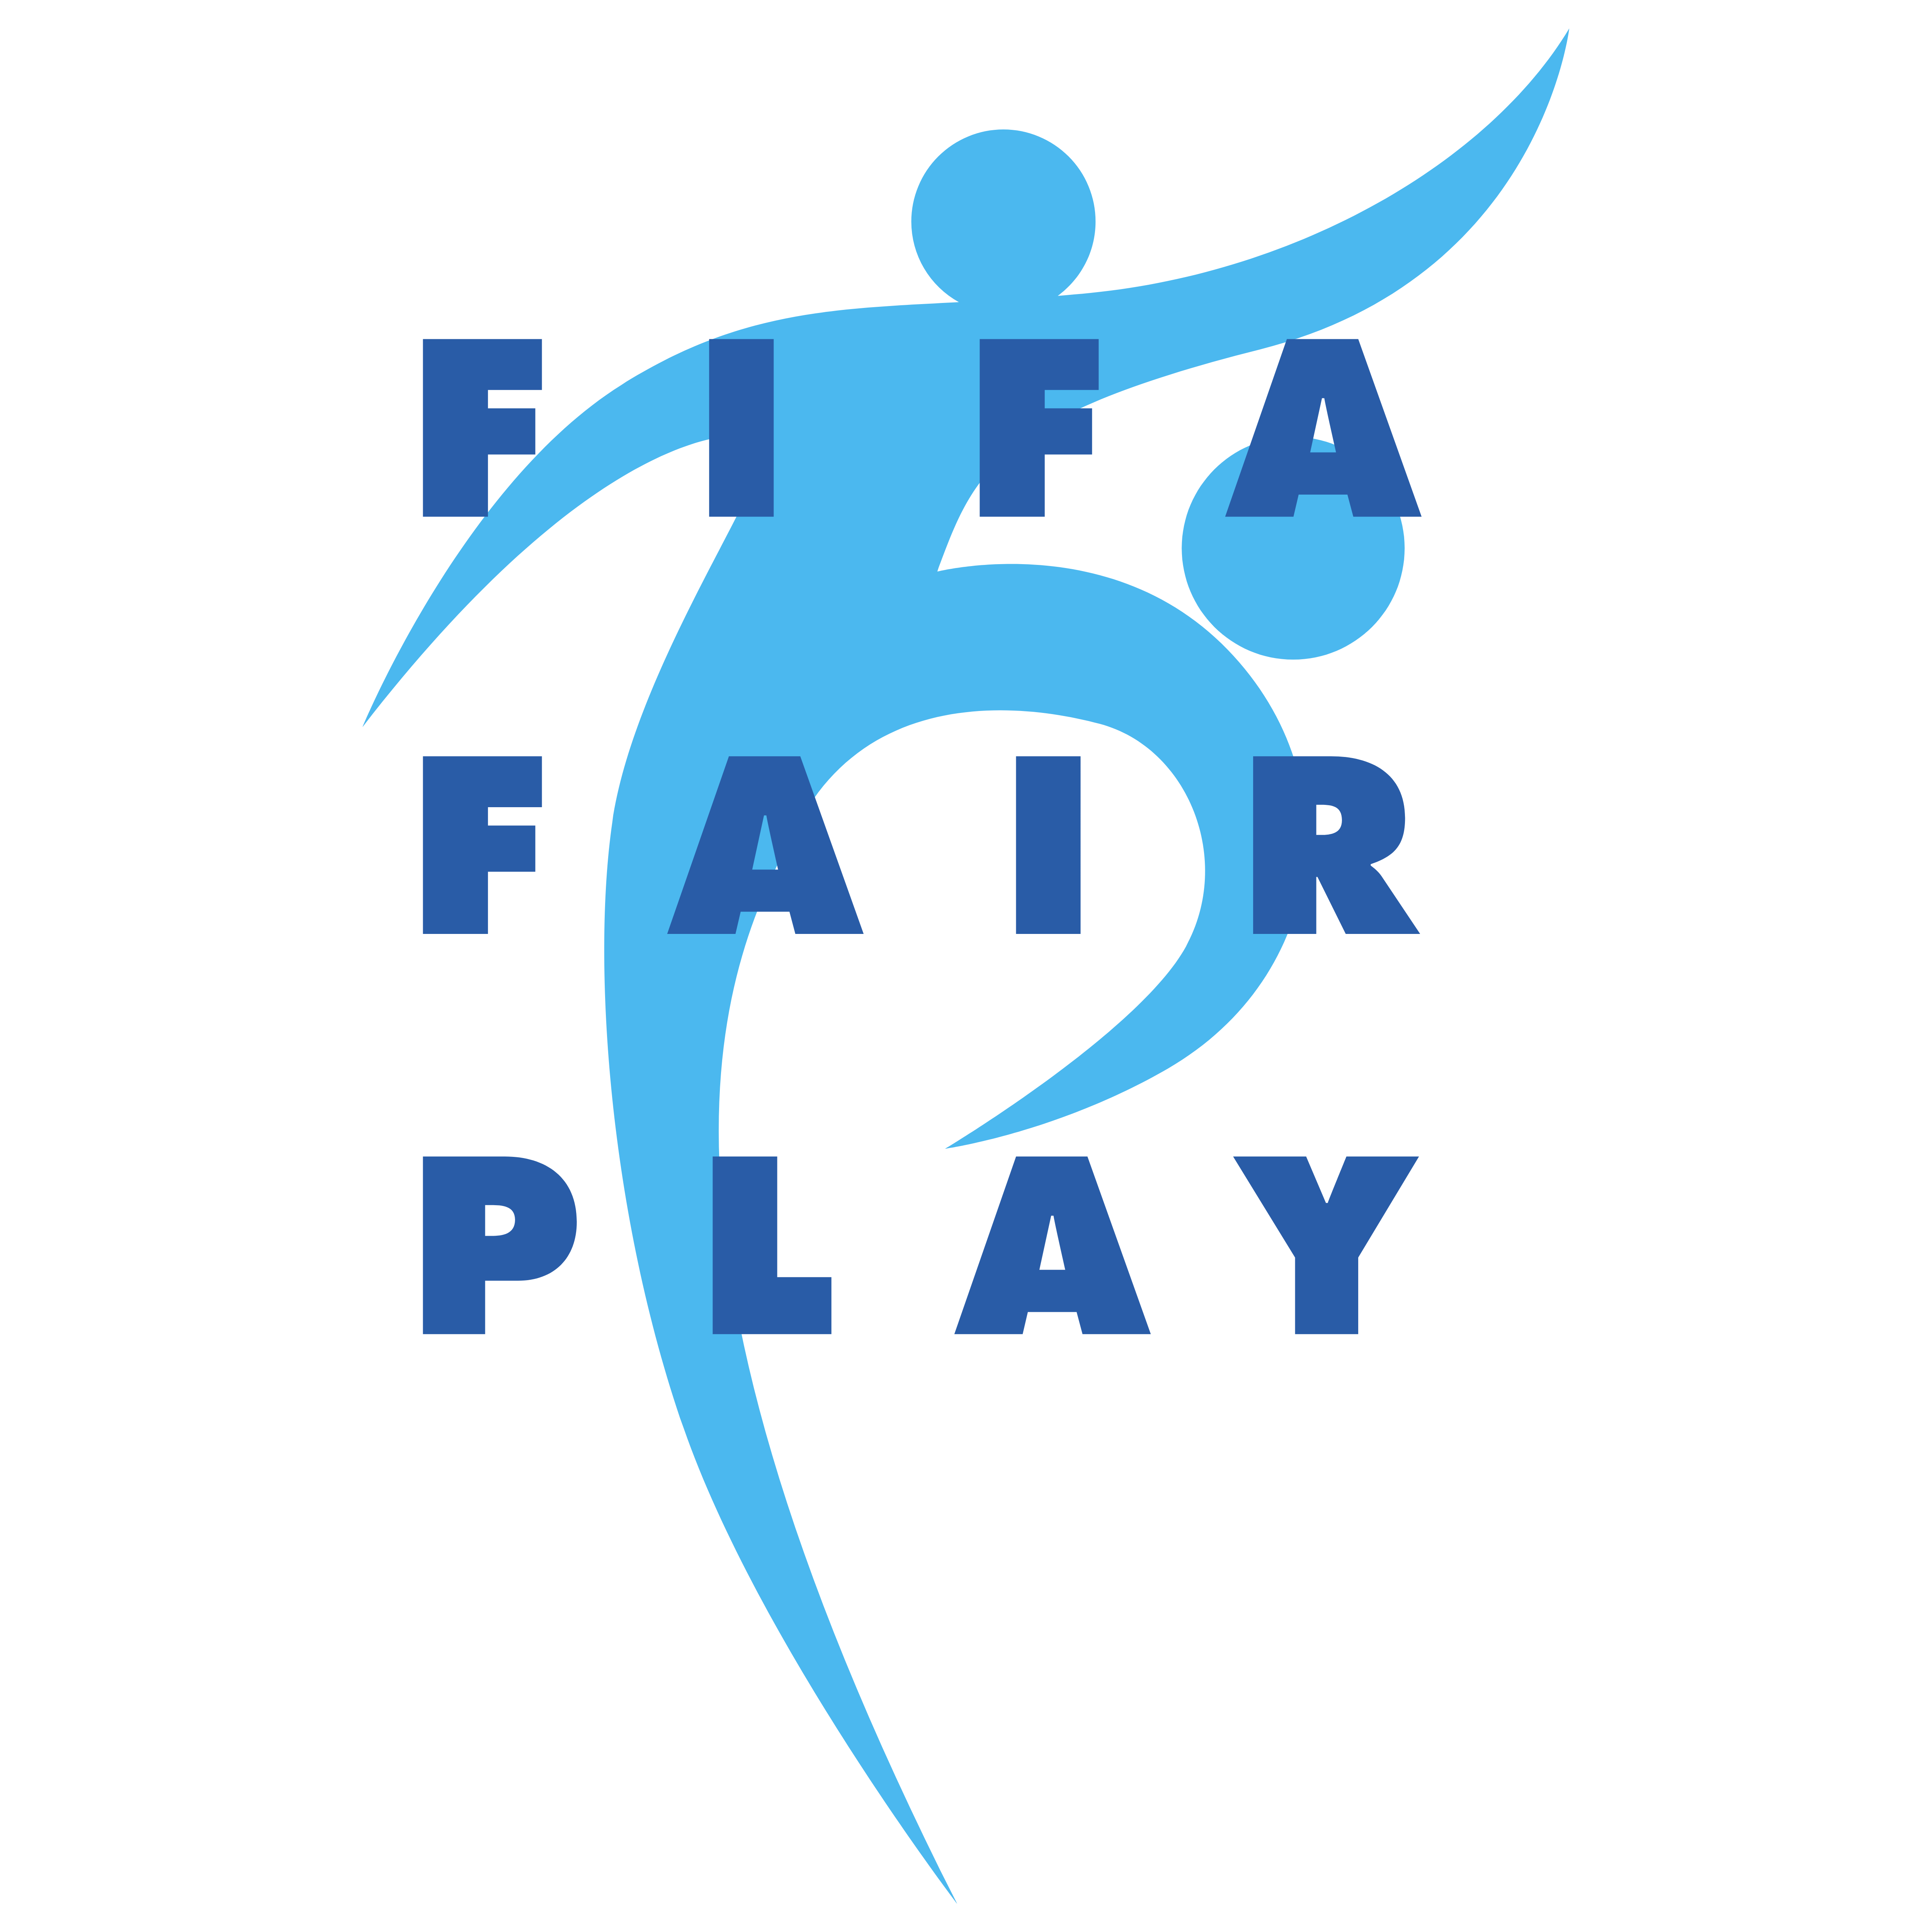 Fair Play эмблема. Логотип движения Фэйр плей. Лига фейр плей логотип. UEFA логотип ФИФА.